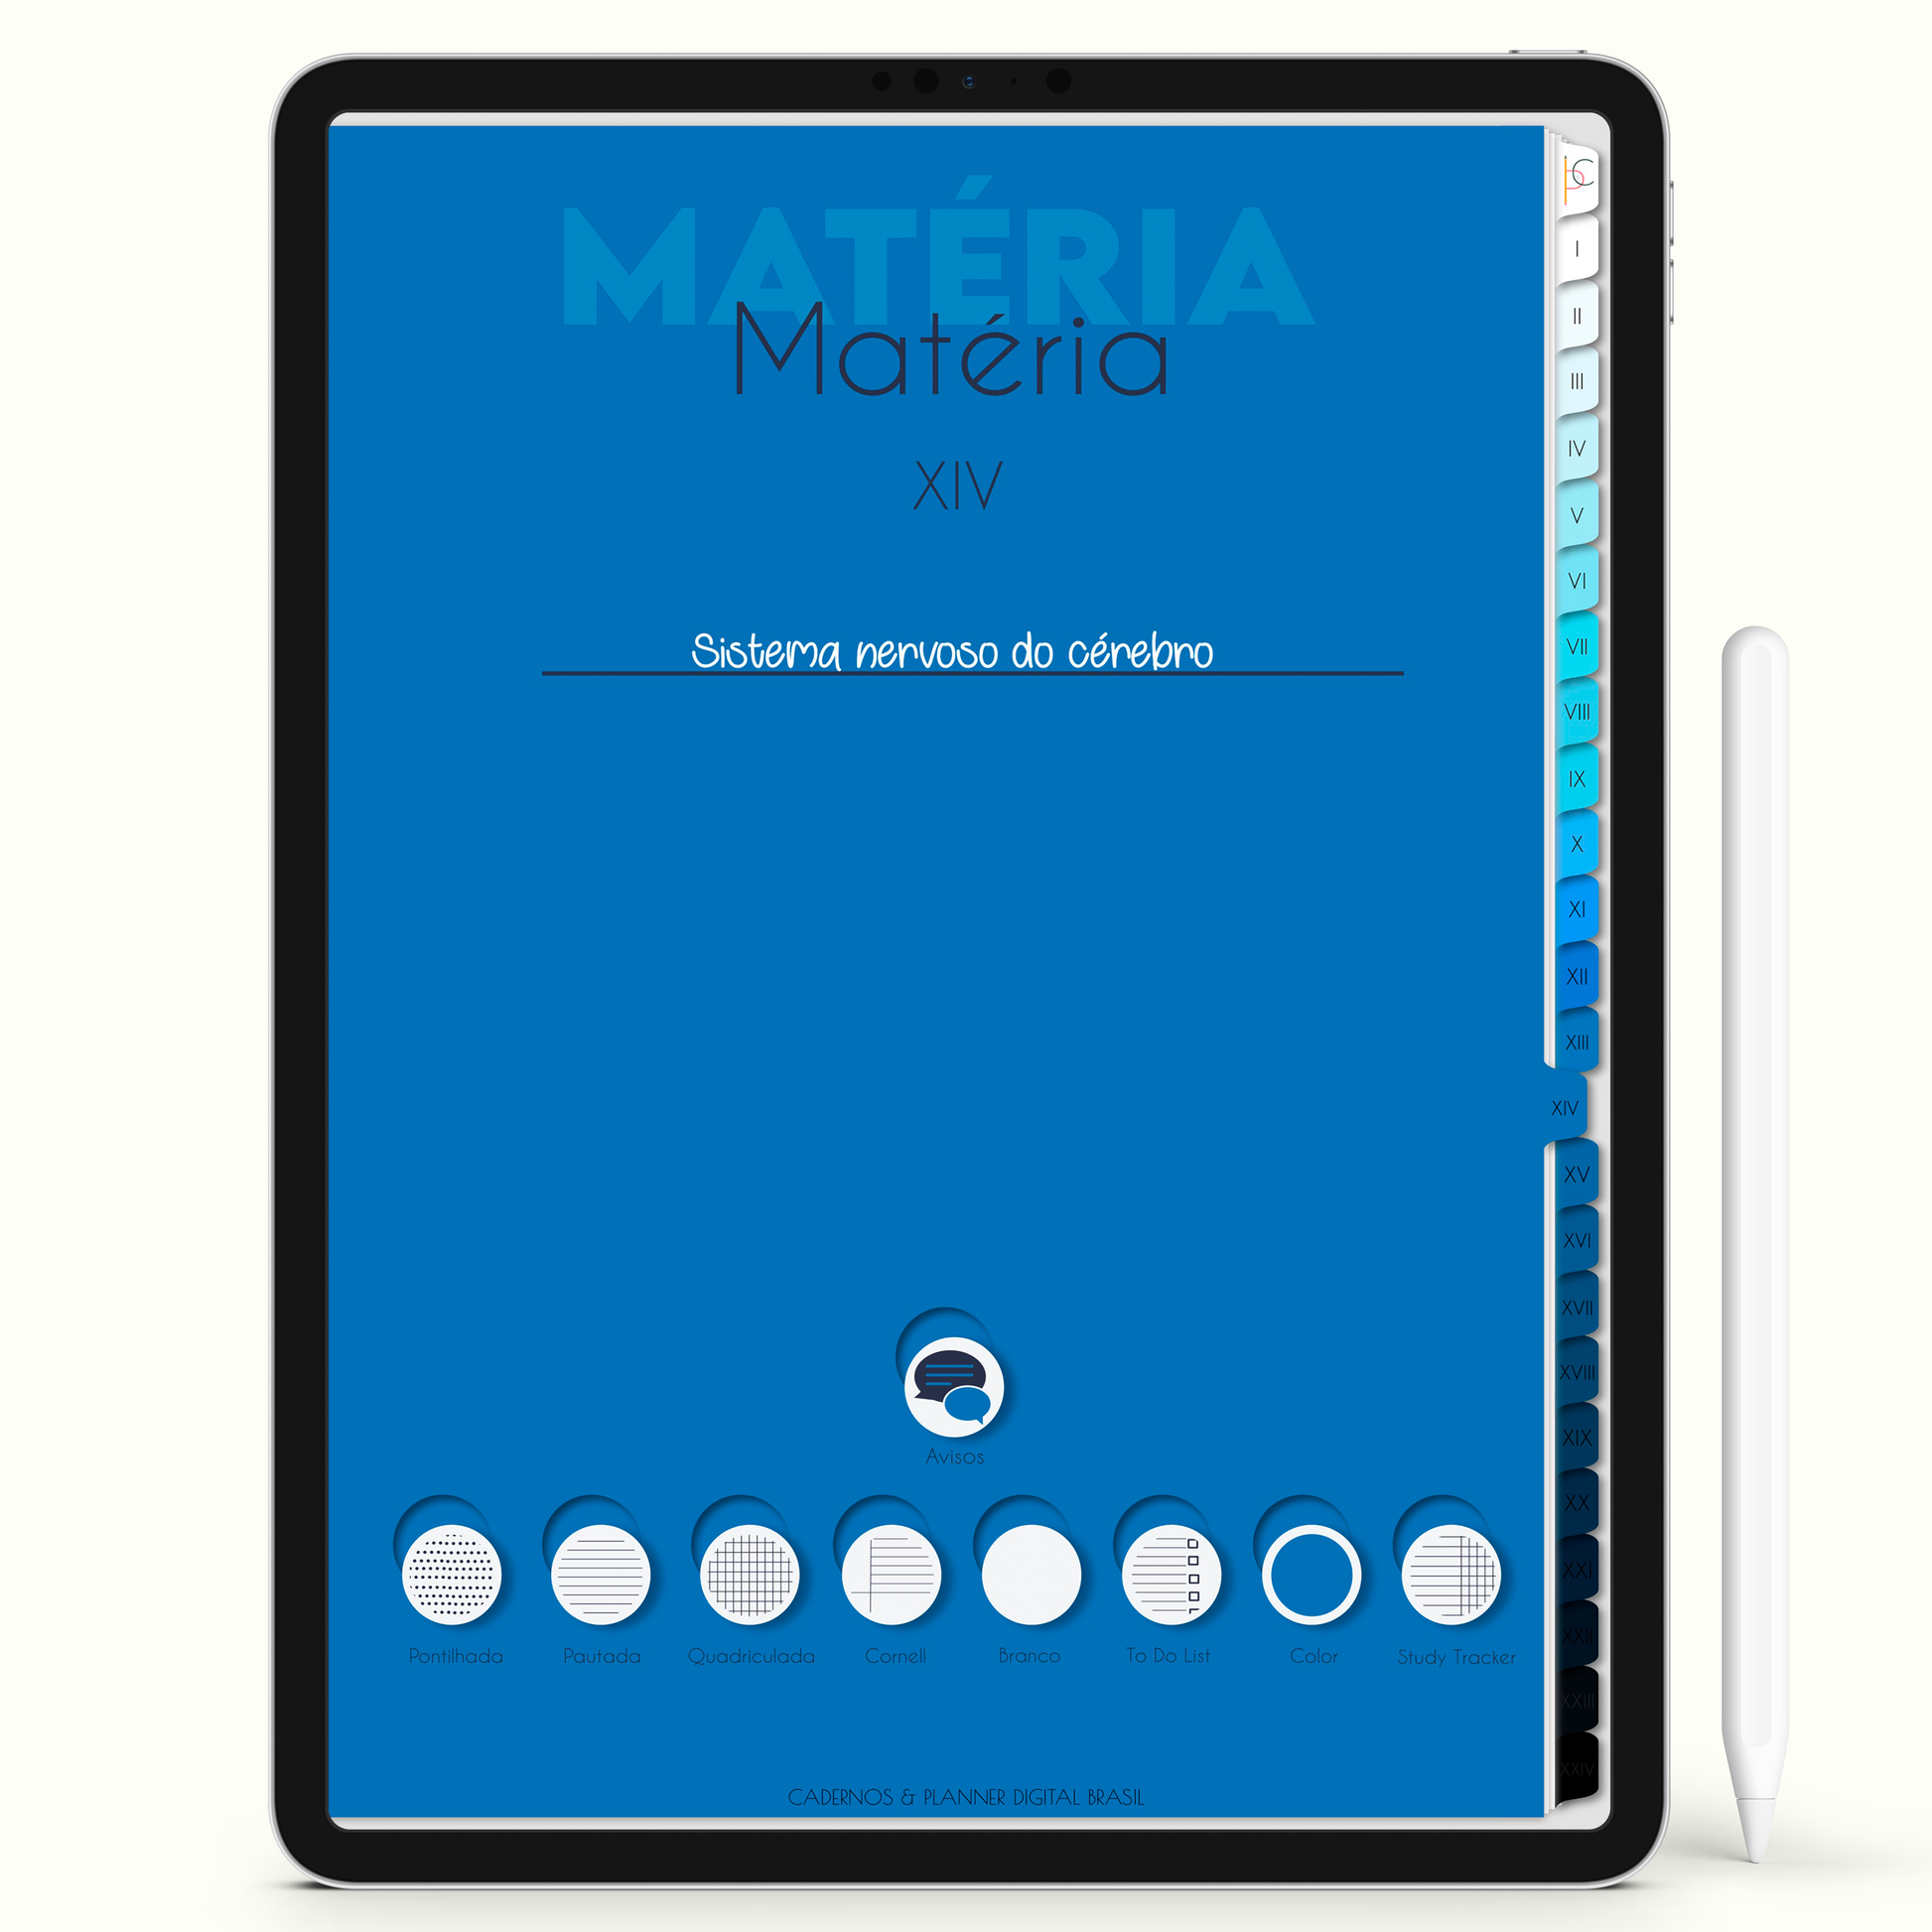 Caderno Digital 24 Matérias - Capa da Matéria para iPad e Tablet Android. Cadernos & Planner Digital Brasil